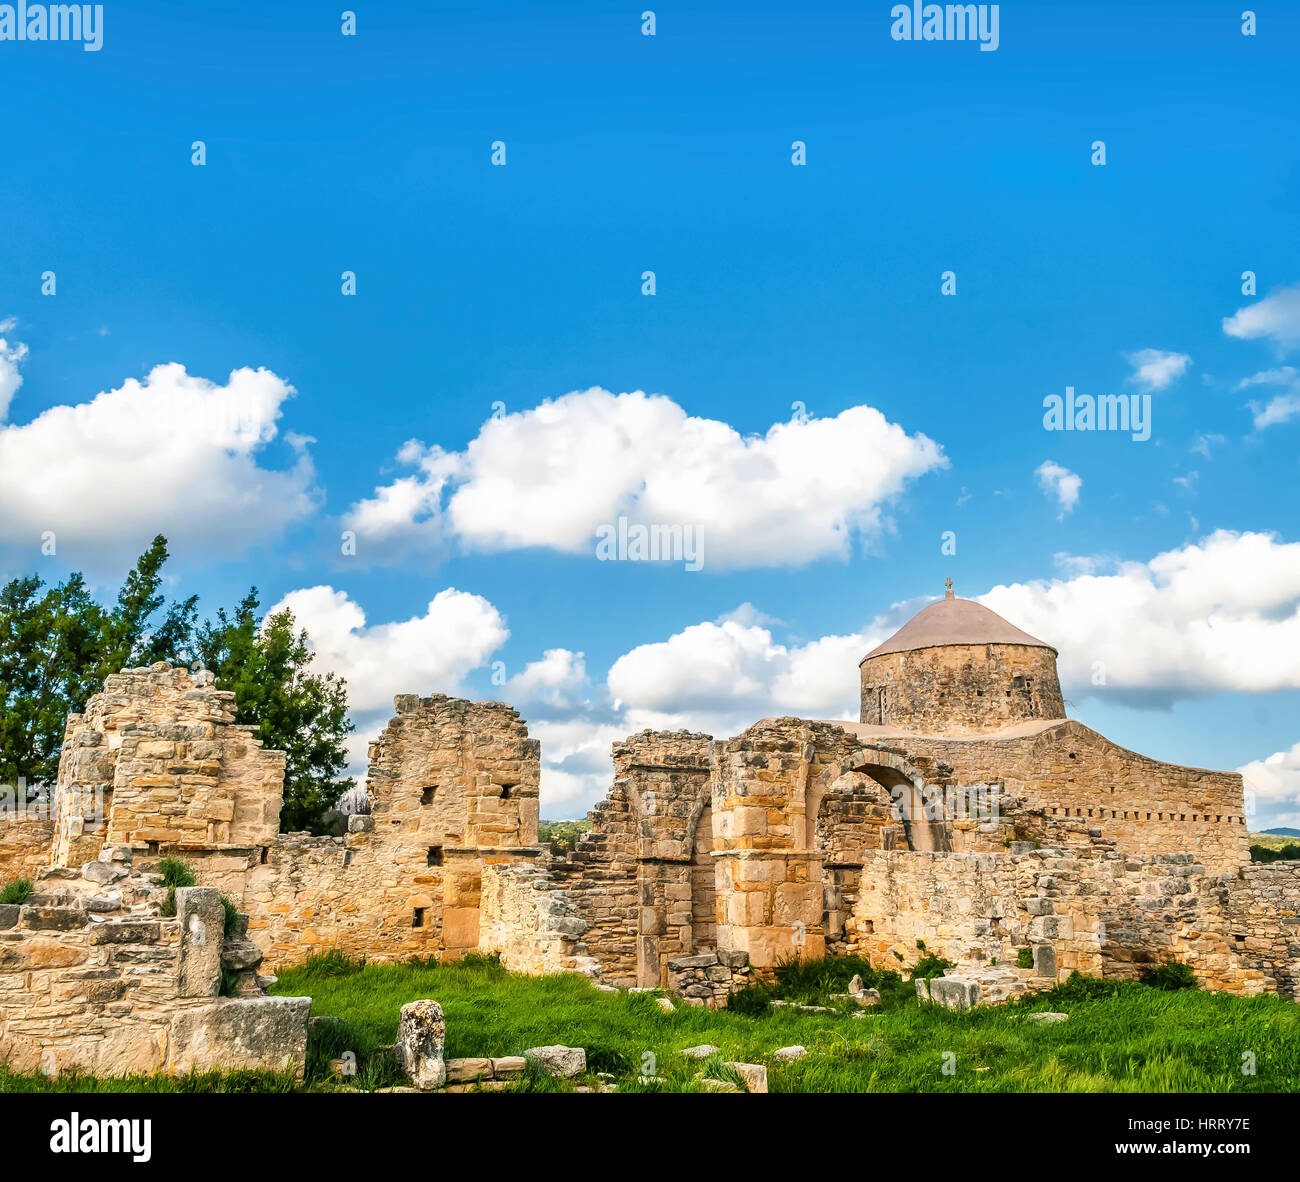 Timiou Stavrou monastero si trova nel tardo romana, primi insediamenti Bizantini, che è menzionata nel Apostoles agisce come la terra di Anogyron. Foto Stock